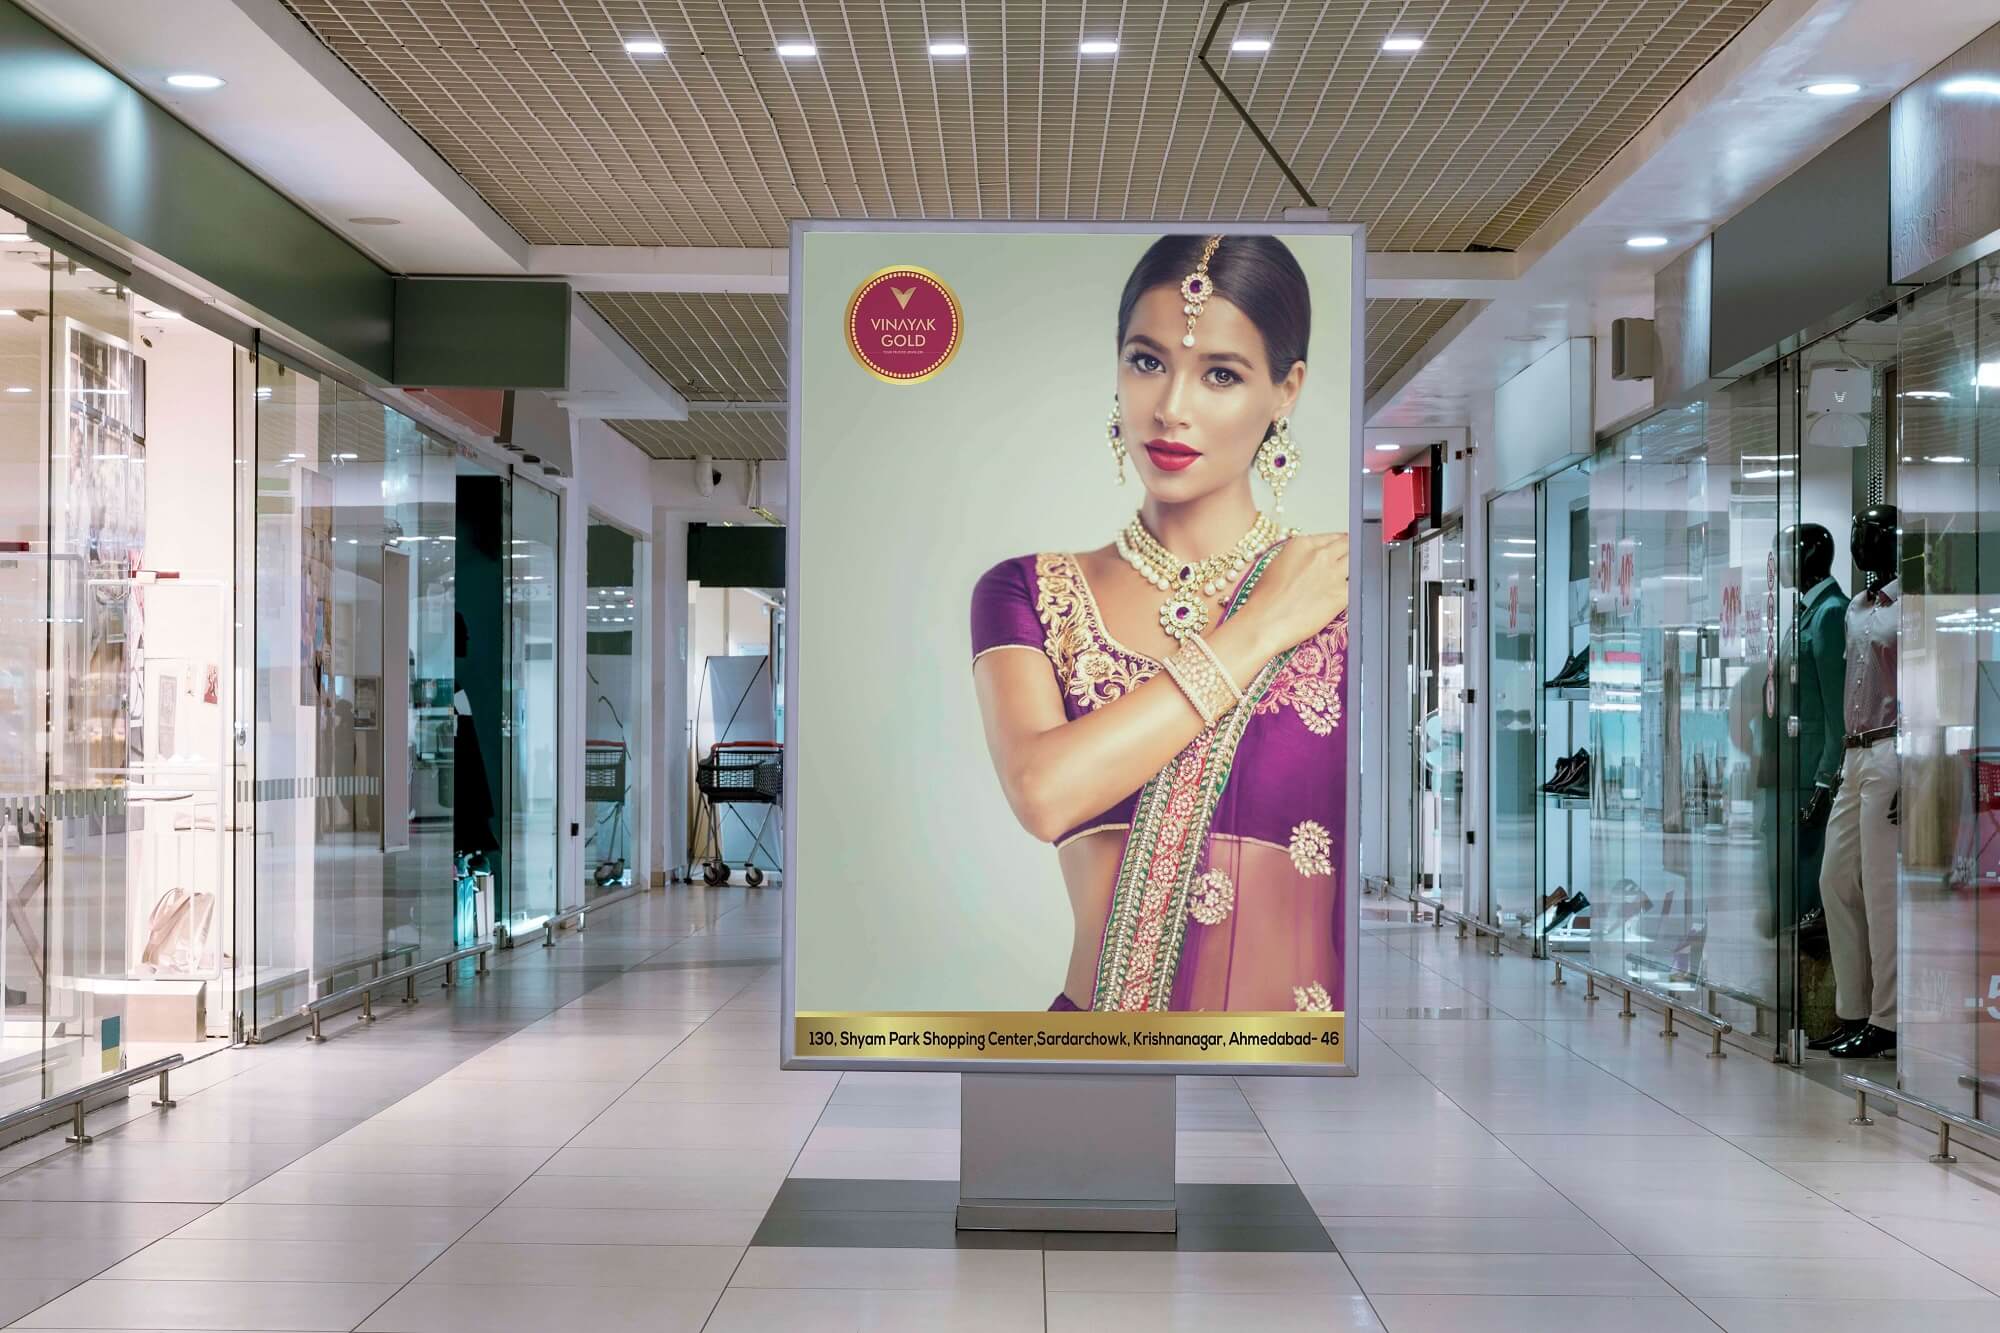 Vinayak Gold Advertise